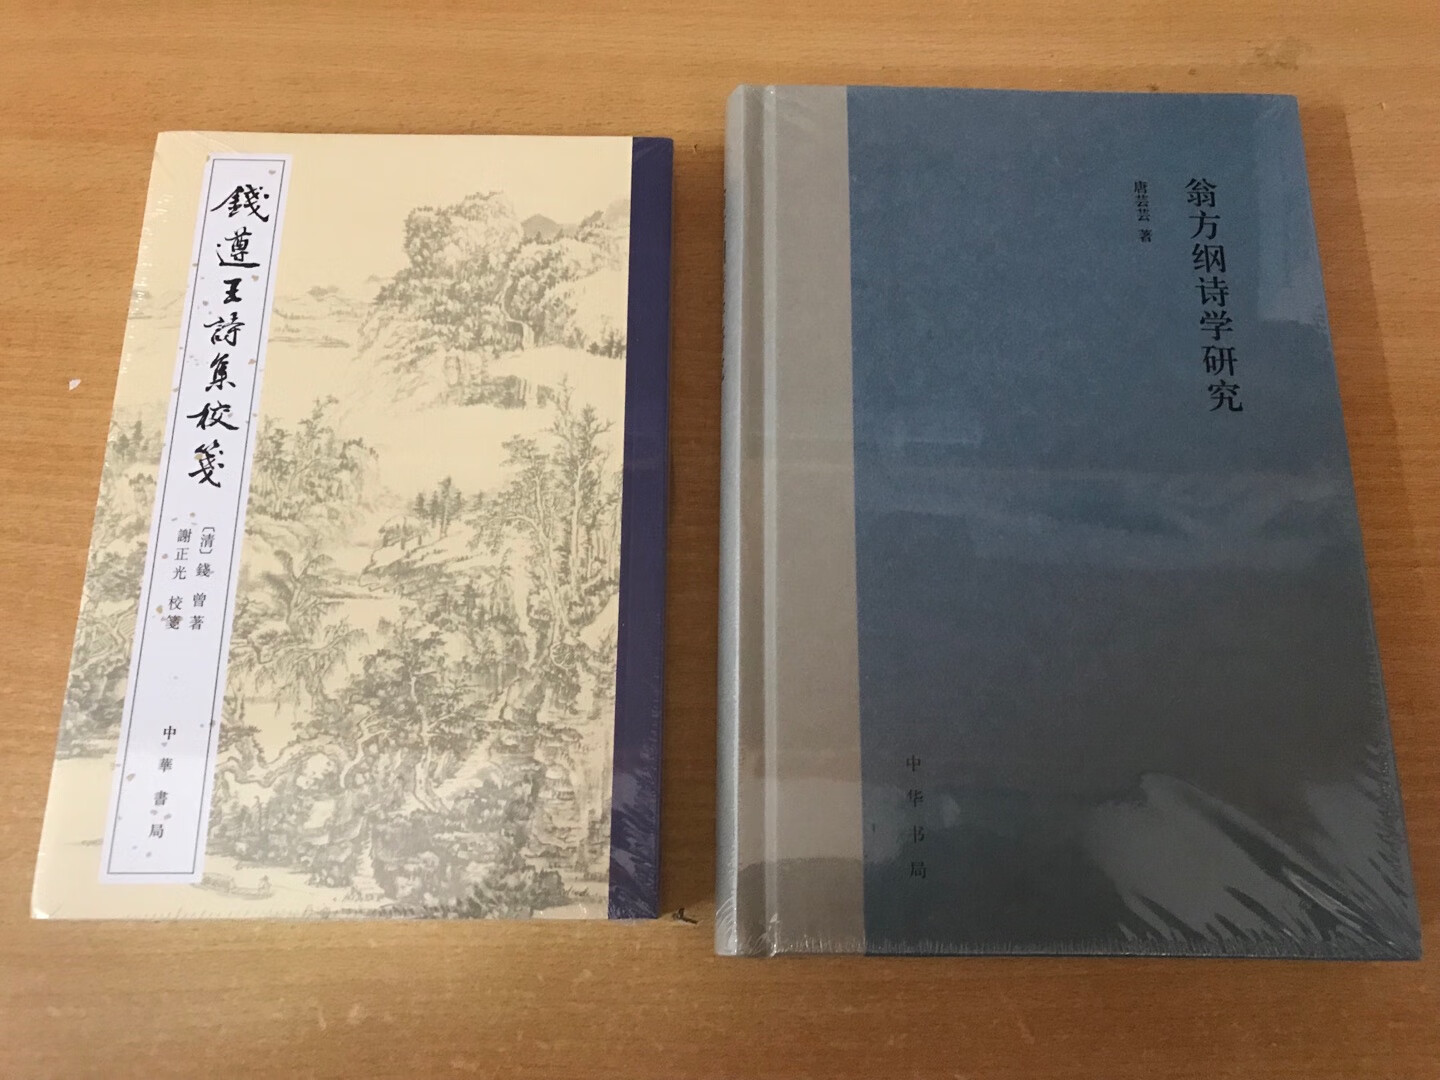 此书并不属于中华书局“中国古典文学基本丛书”的系列，所以封面的图案、风格不是那套的绿颜色。看惯了那套，这个真是令人眼前一亮啊！